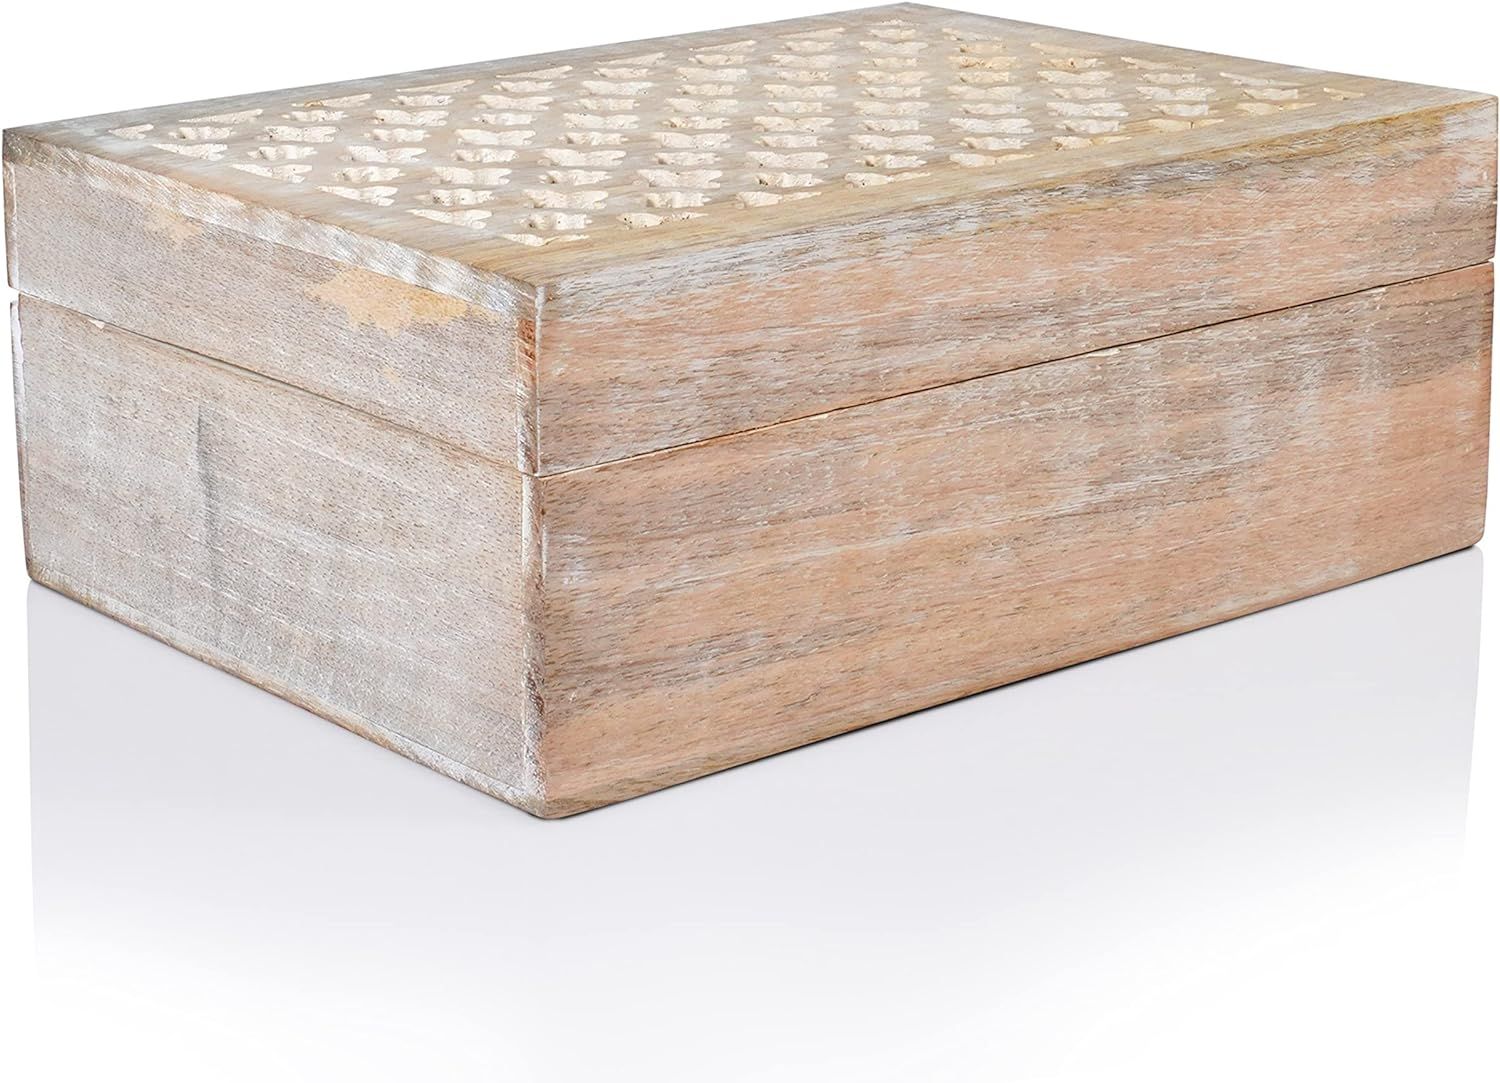 Mela Artisans Decorative Storage Box with Hinged Lid - Whitewash, XL | 10.5” x 7.5” x 4” | ... | Amazon (US)